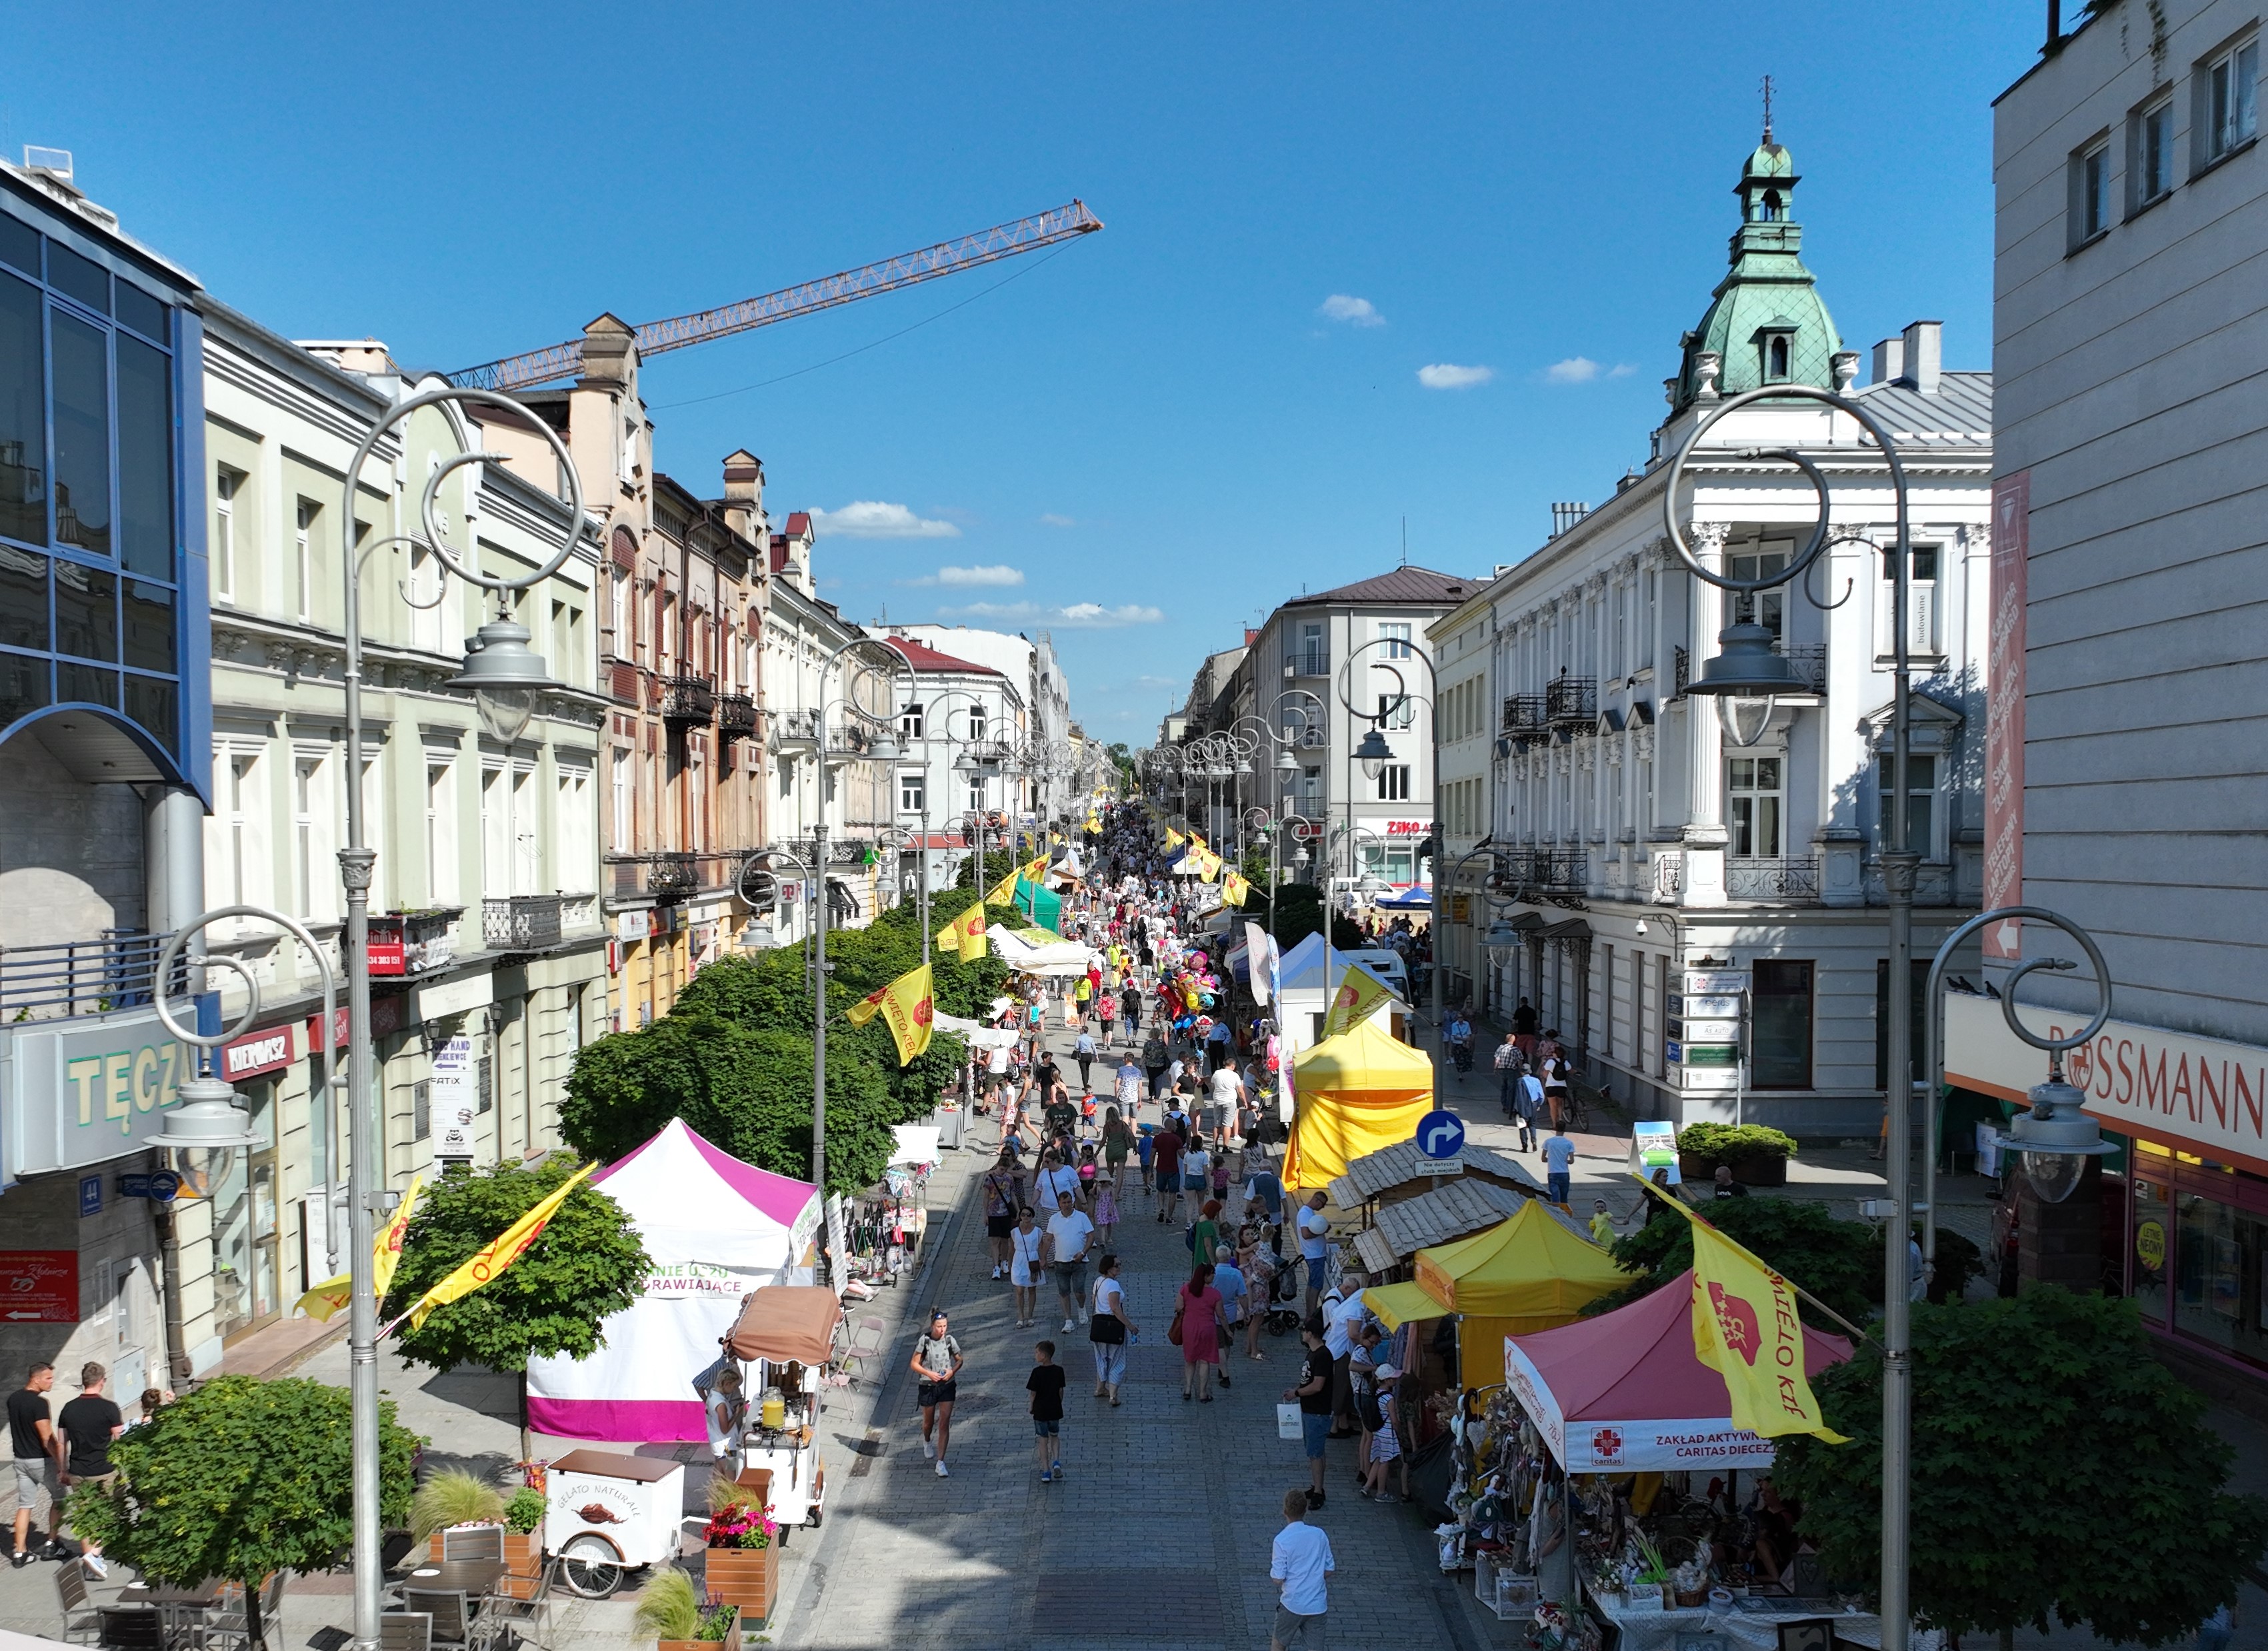 Ulica Sienkiewicza widziana z góry, na której ustawione są stoiska handlowe. Na ulicy jest wiele osób.